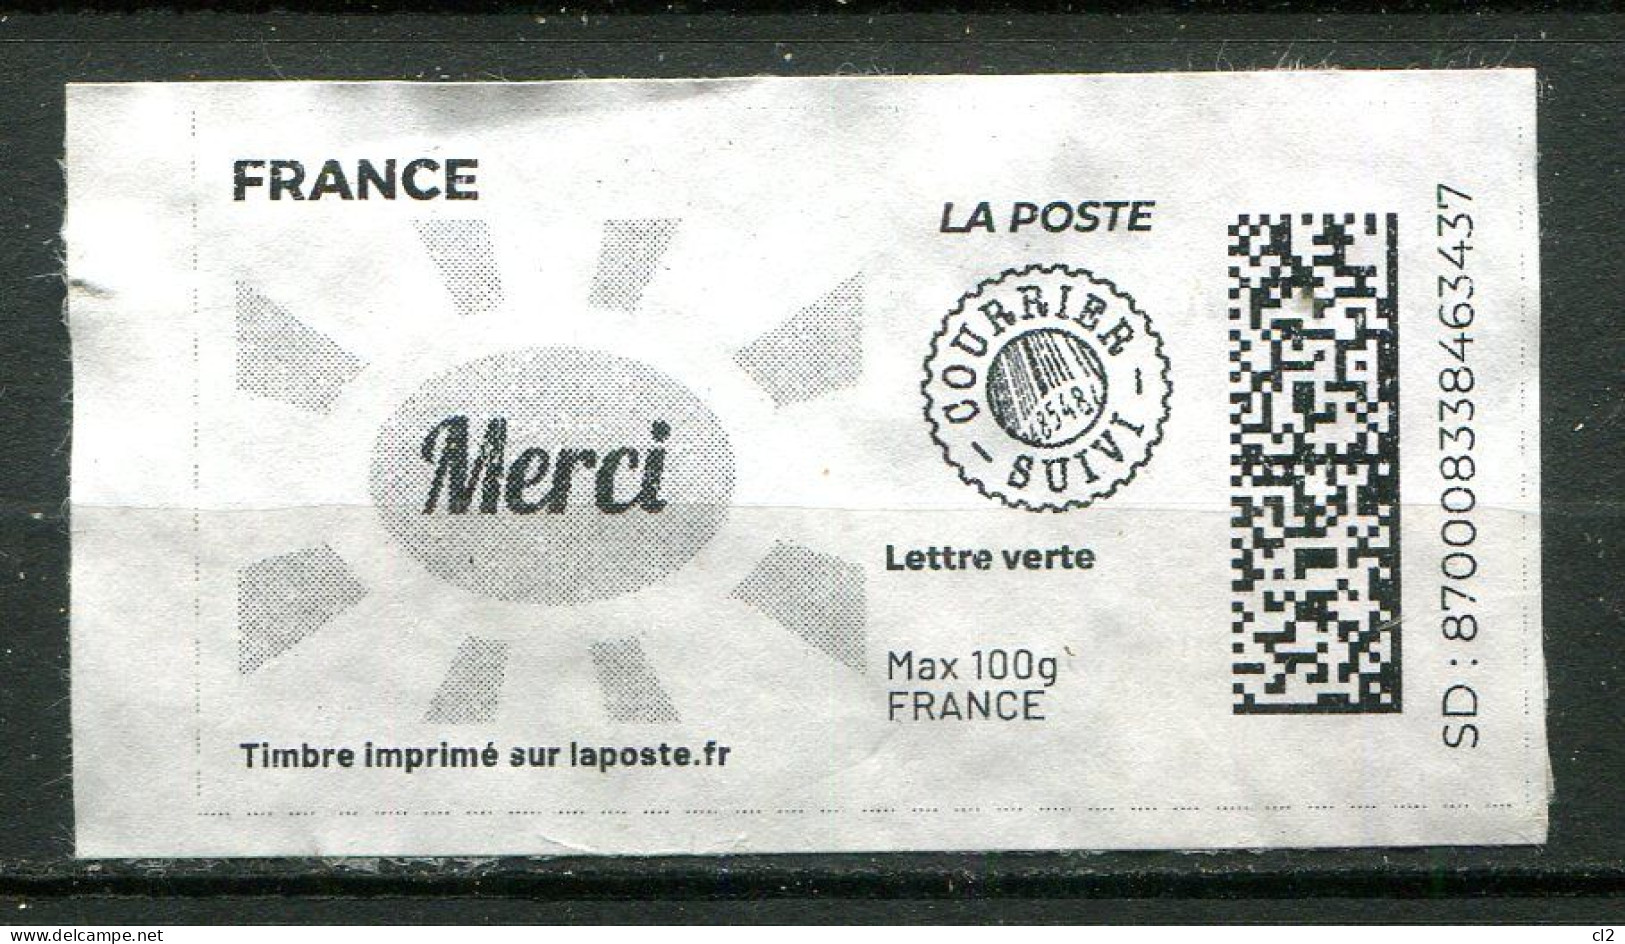 FRANCE - Timbre Imprimé Sur Laposte.fr - Lettre Verte - Courrier Suivi - Max 100g - MERCI - Druckbare Briefmarken (Montimbrenligne)